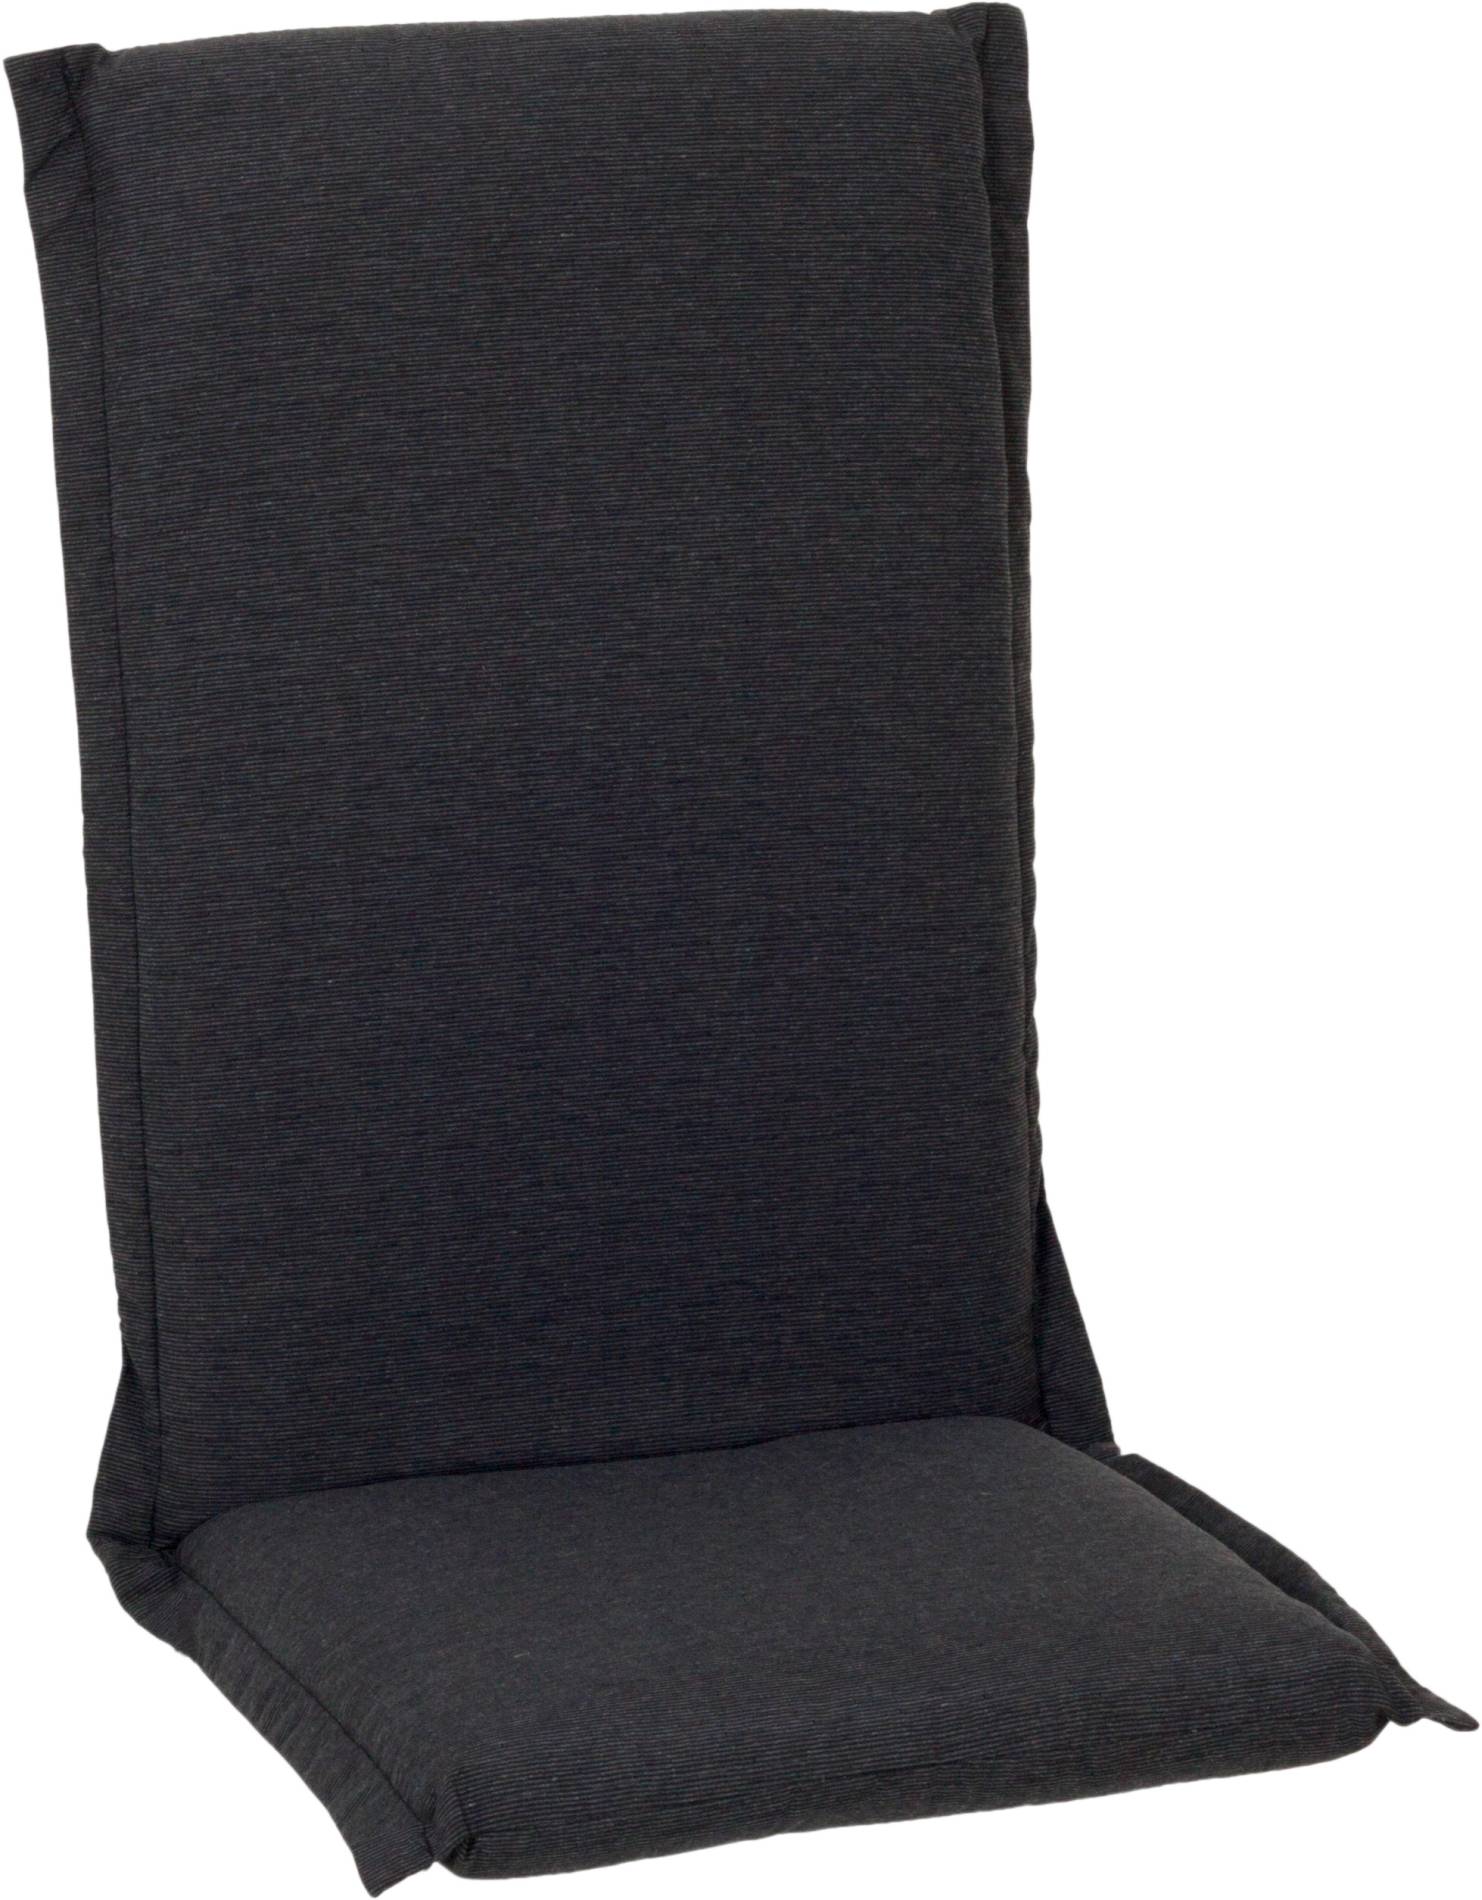 Premium Sitzkissen für Hochlehner in dunkelgrau Querstreifen Struktur mit Reissverschlüssen 